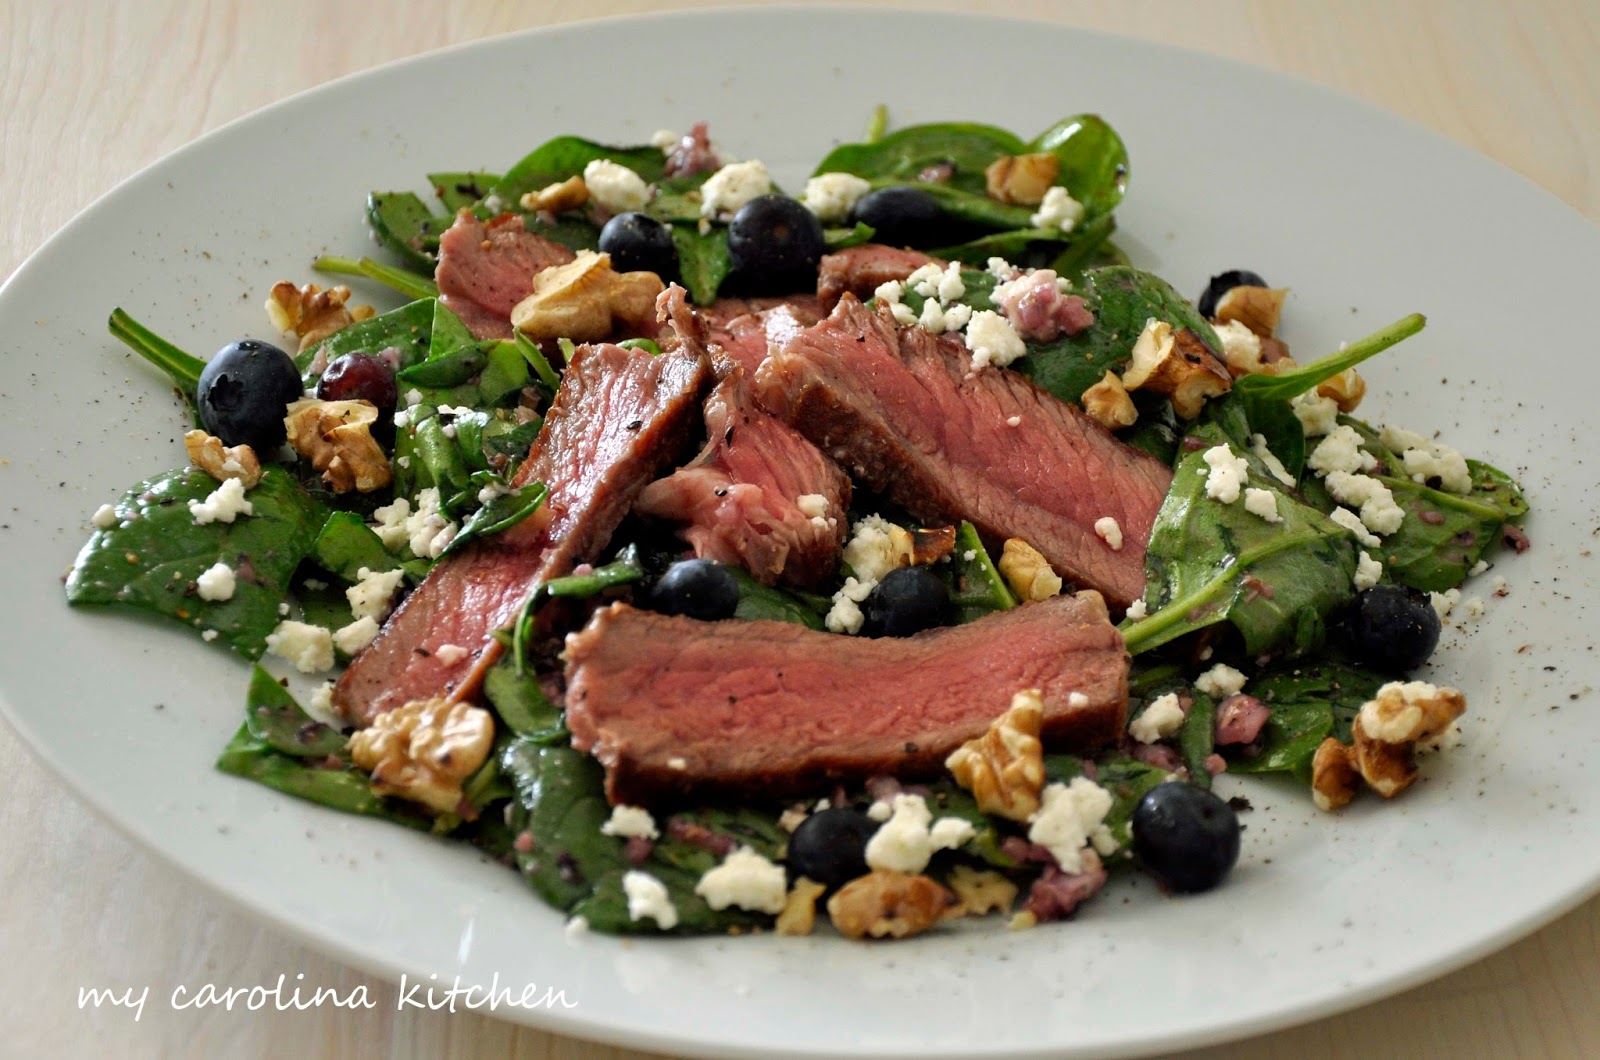 My Carolina Kitchen: Steak Salad with Spinach, Blueberries ...